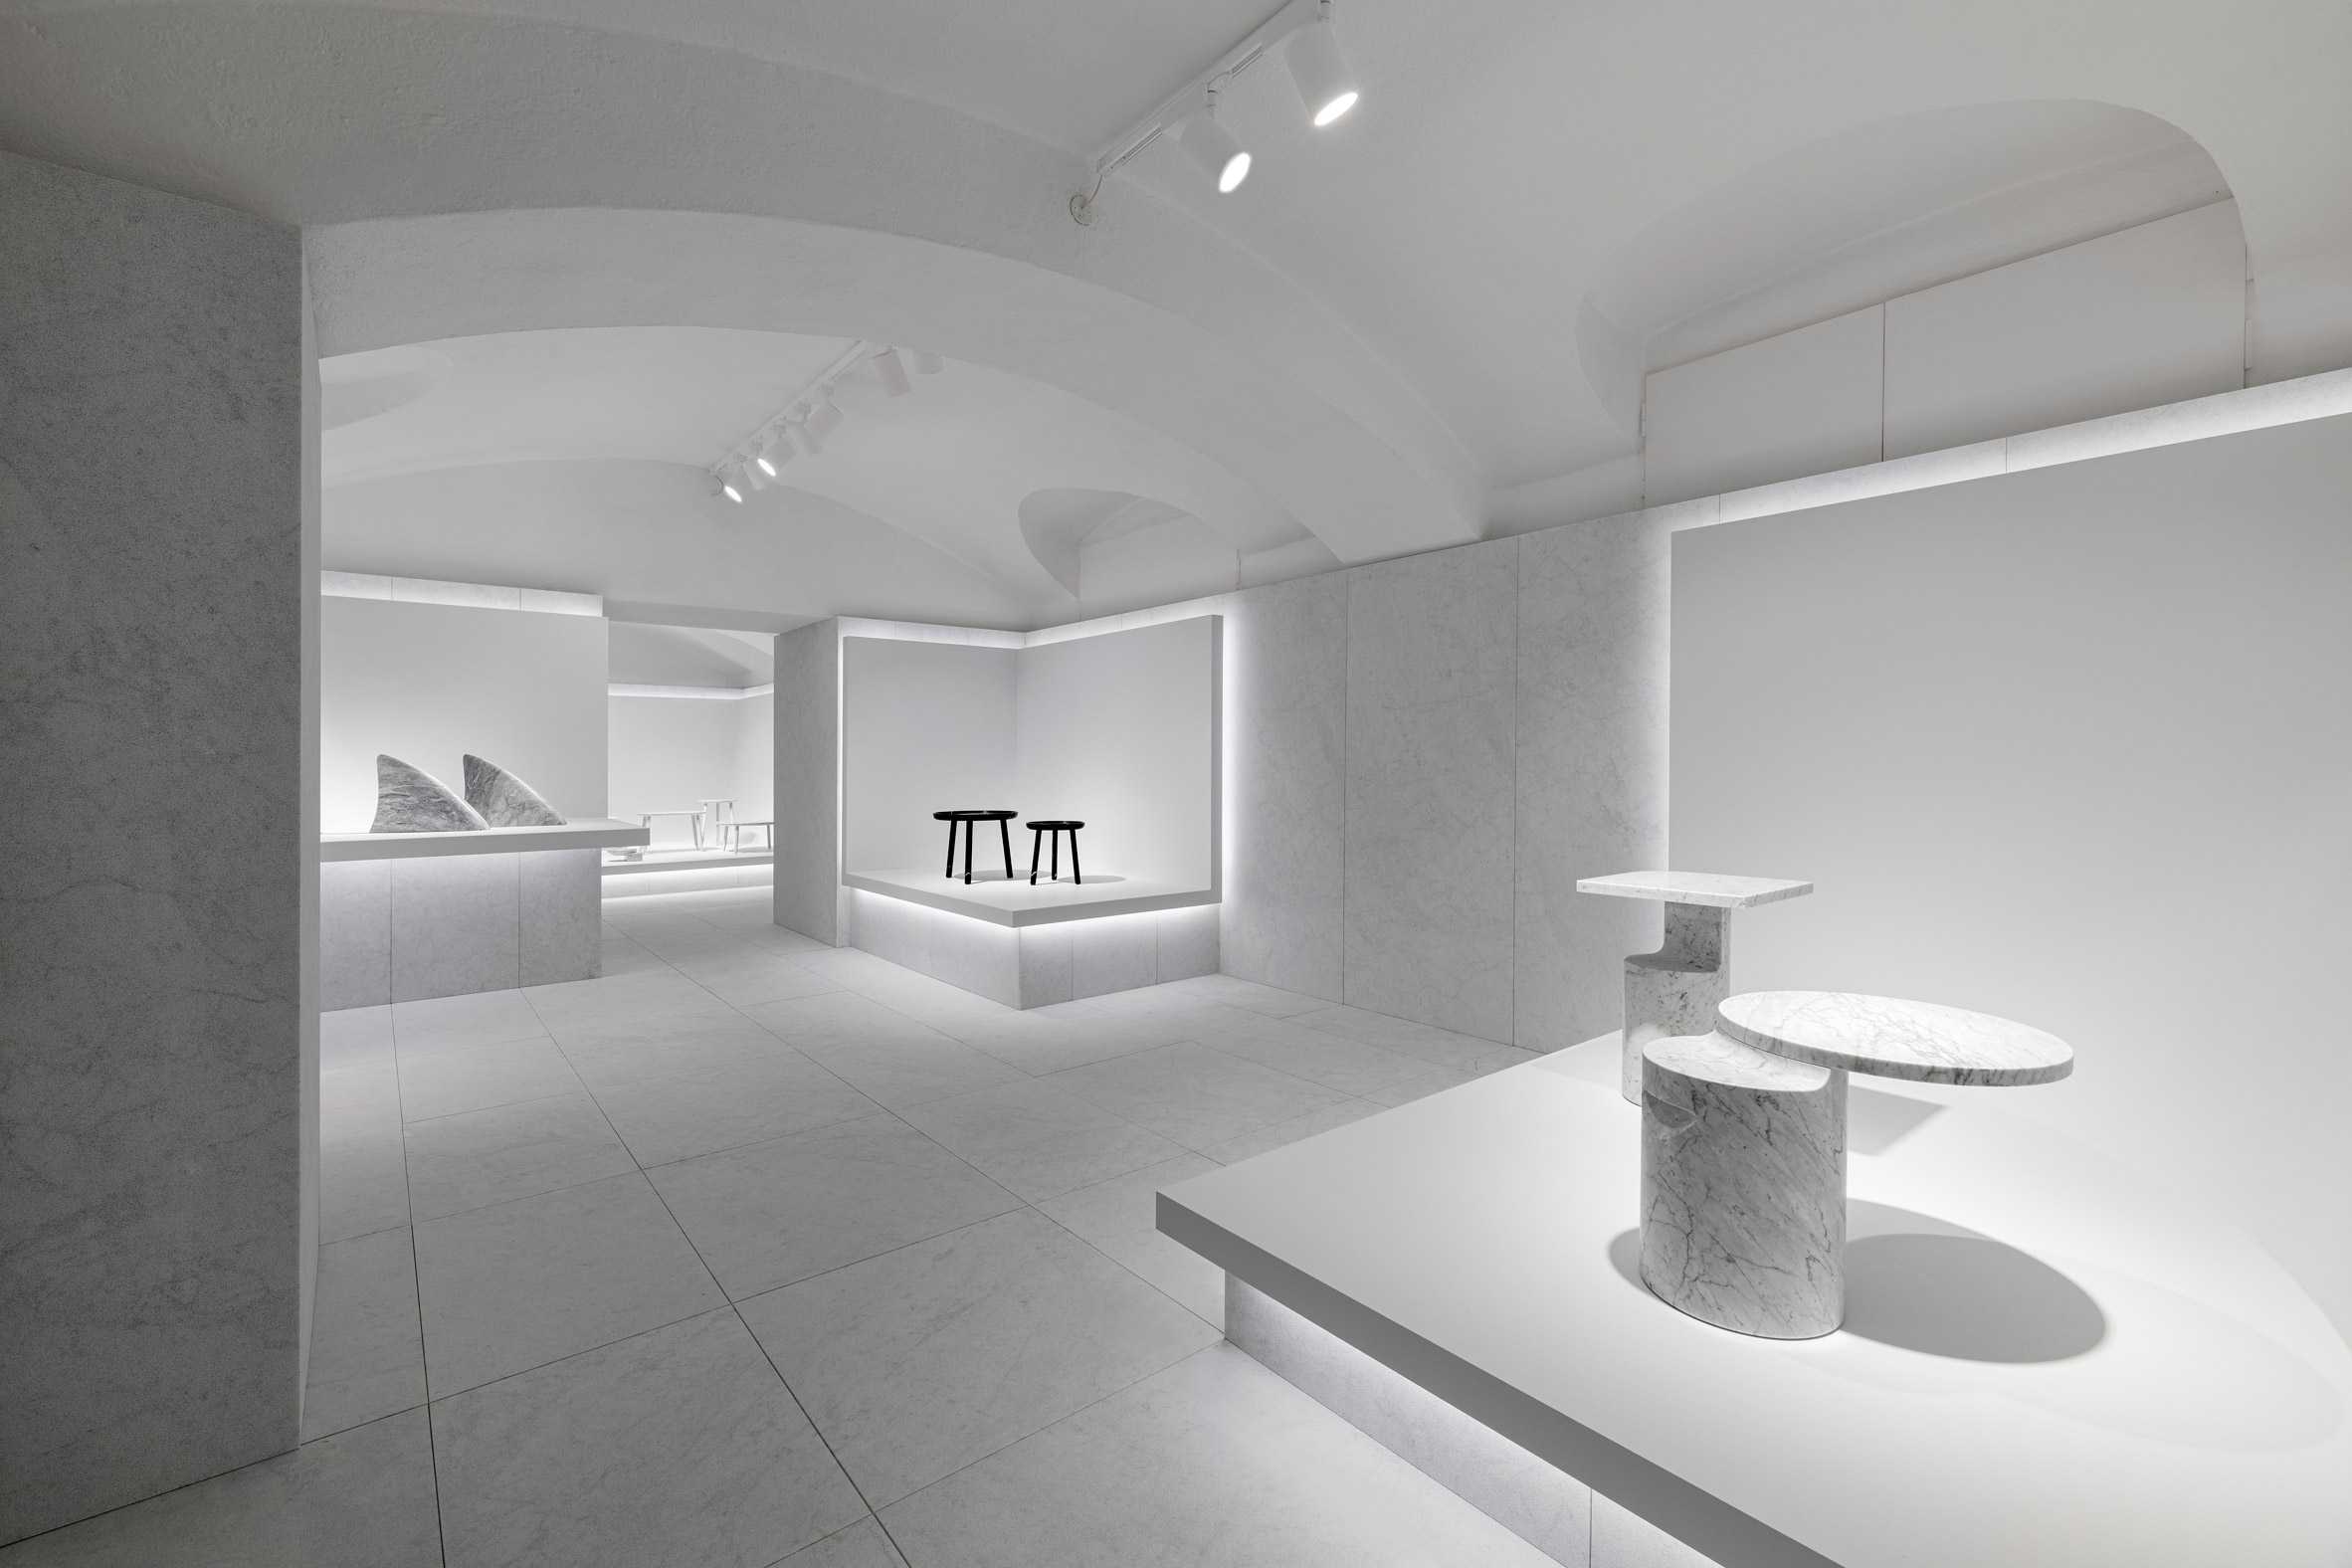 米兰的Marsotto陈列室采用大理石浮雕外墙完成